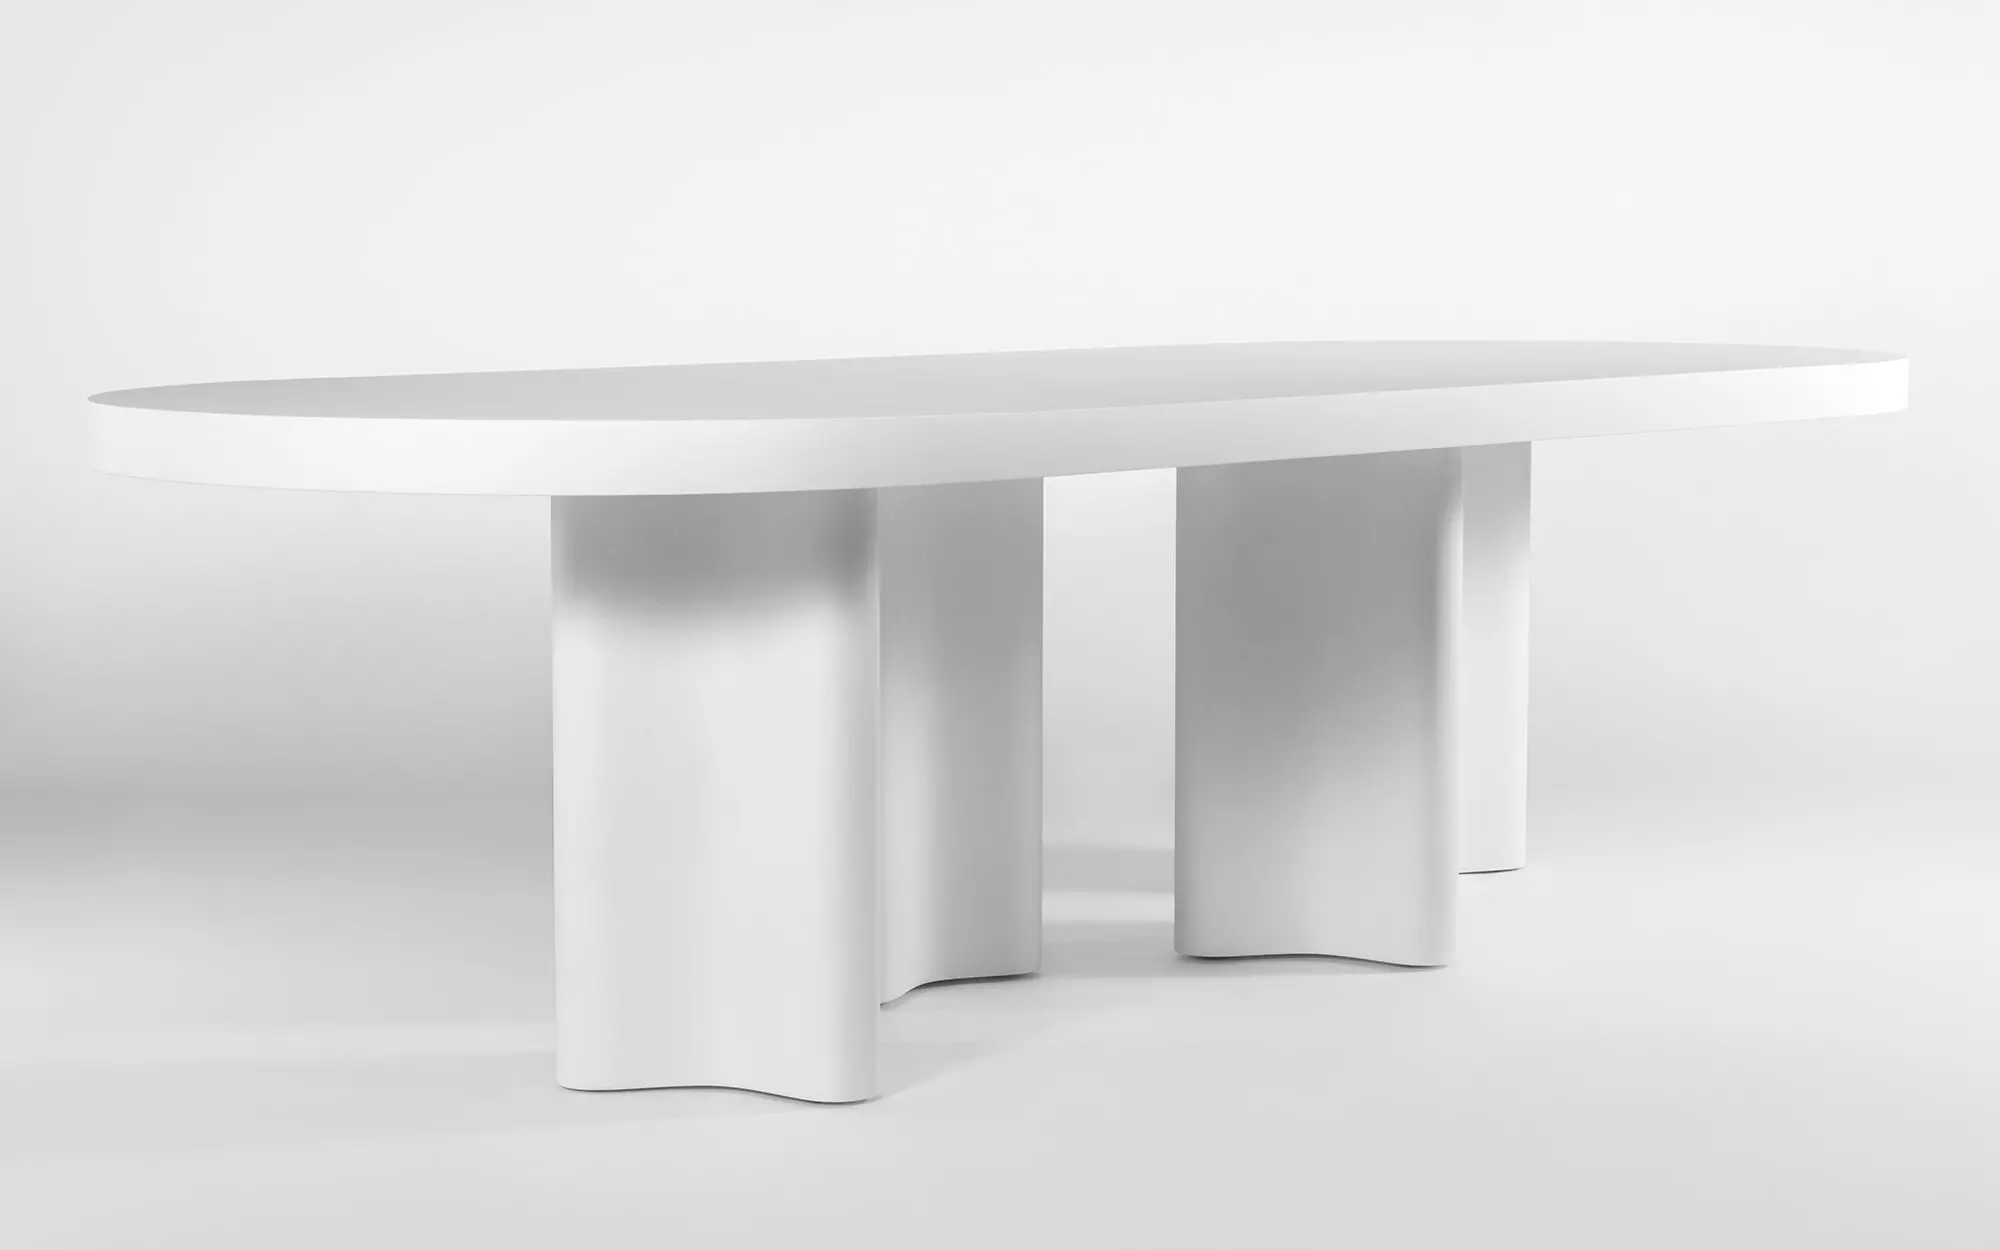 Azo oval table - François Bauchet - Desk - Galerie kreo